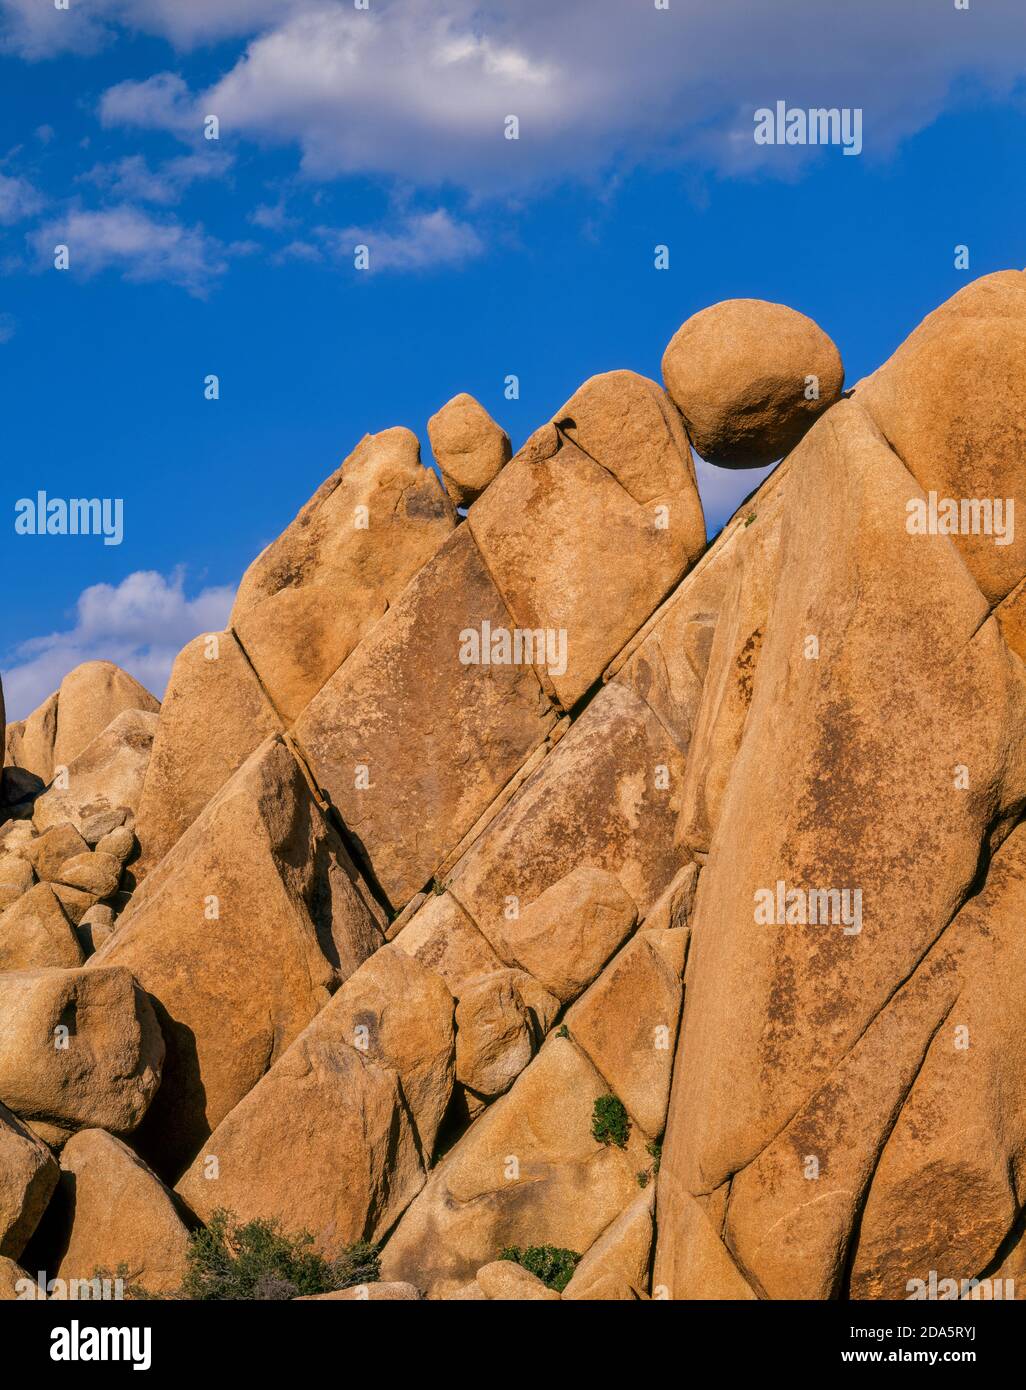 Balanced Rock, Joshua Tree National Park, California Stock Photo